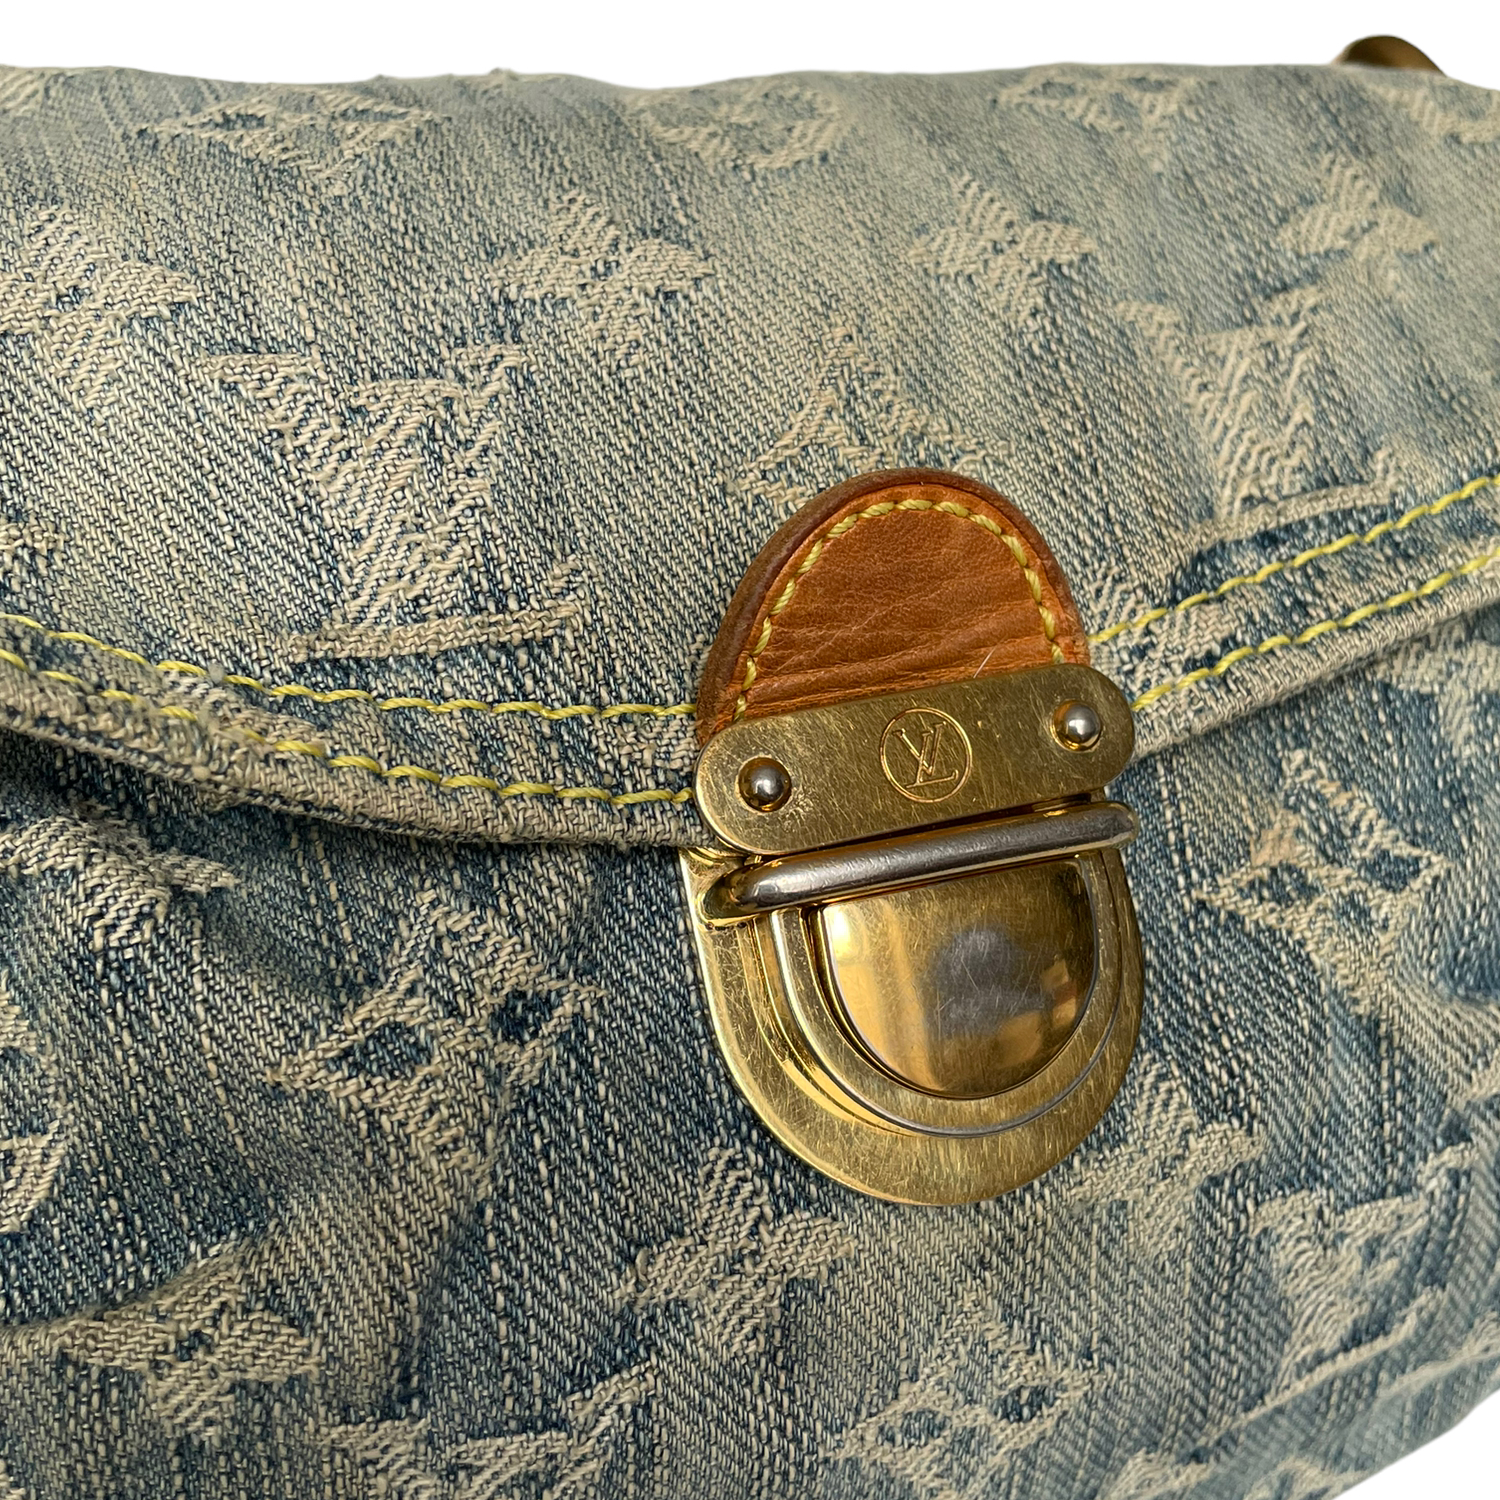 Louis Vuitton Pleaty Shoulder Bag Small Blue Denim